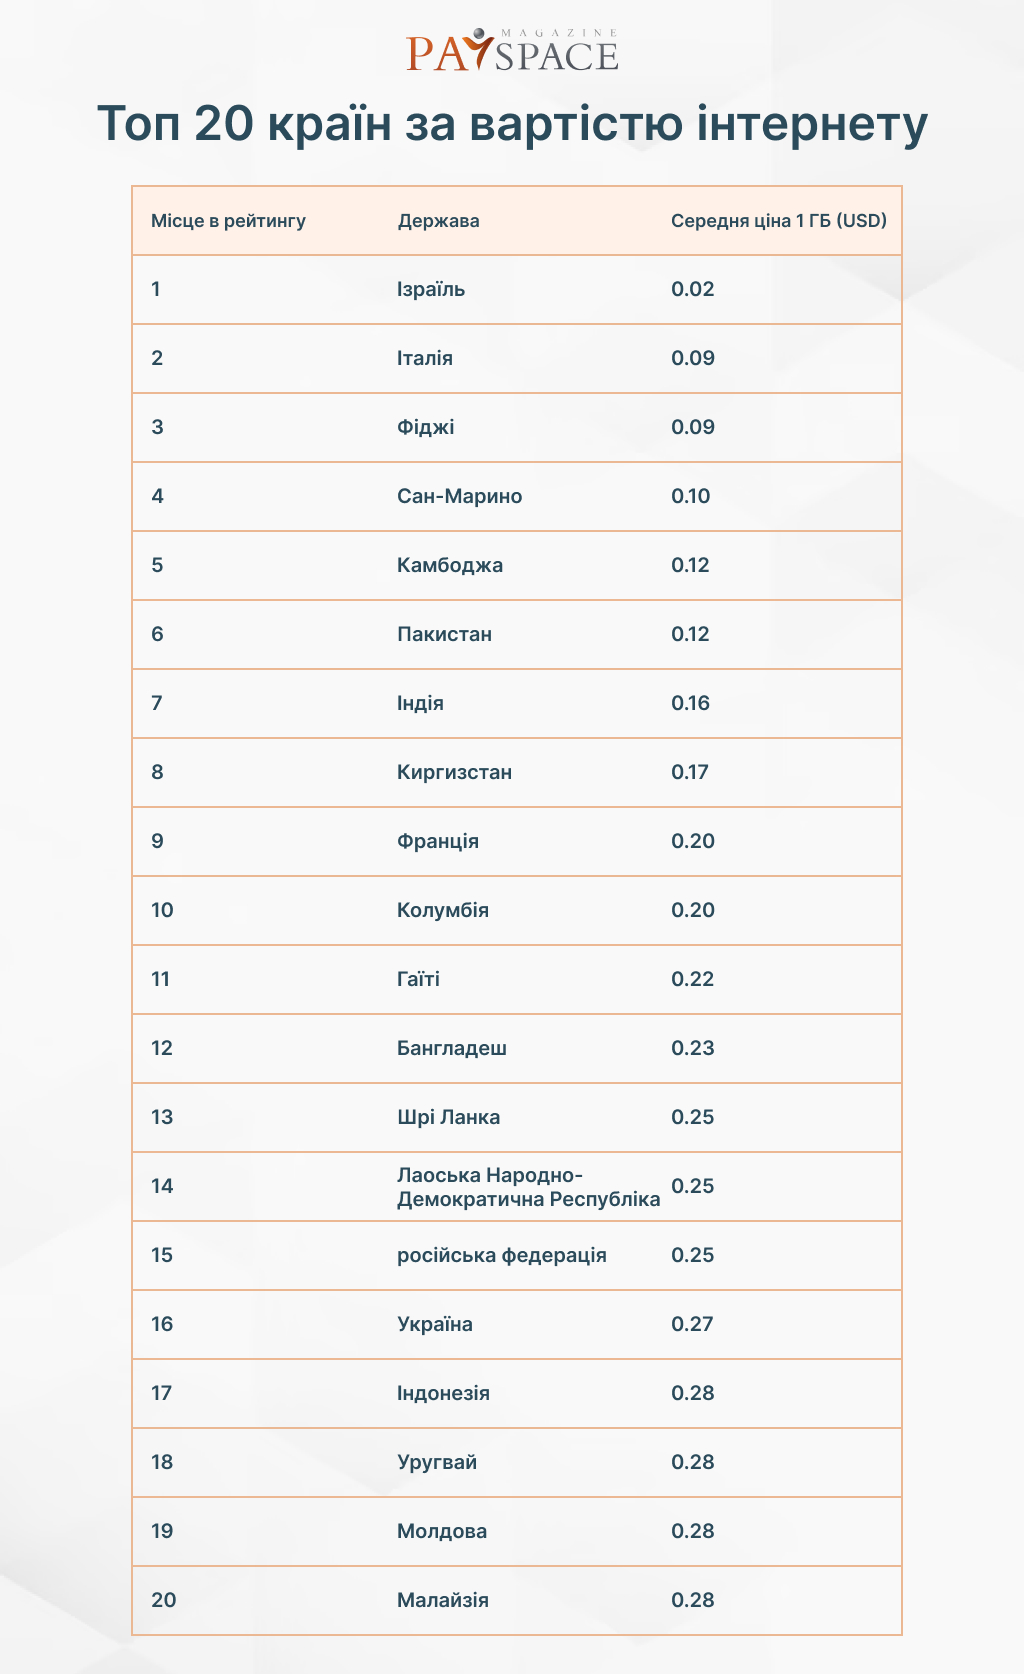 Топ-20 країн із найдешевшим інтернетом